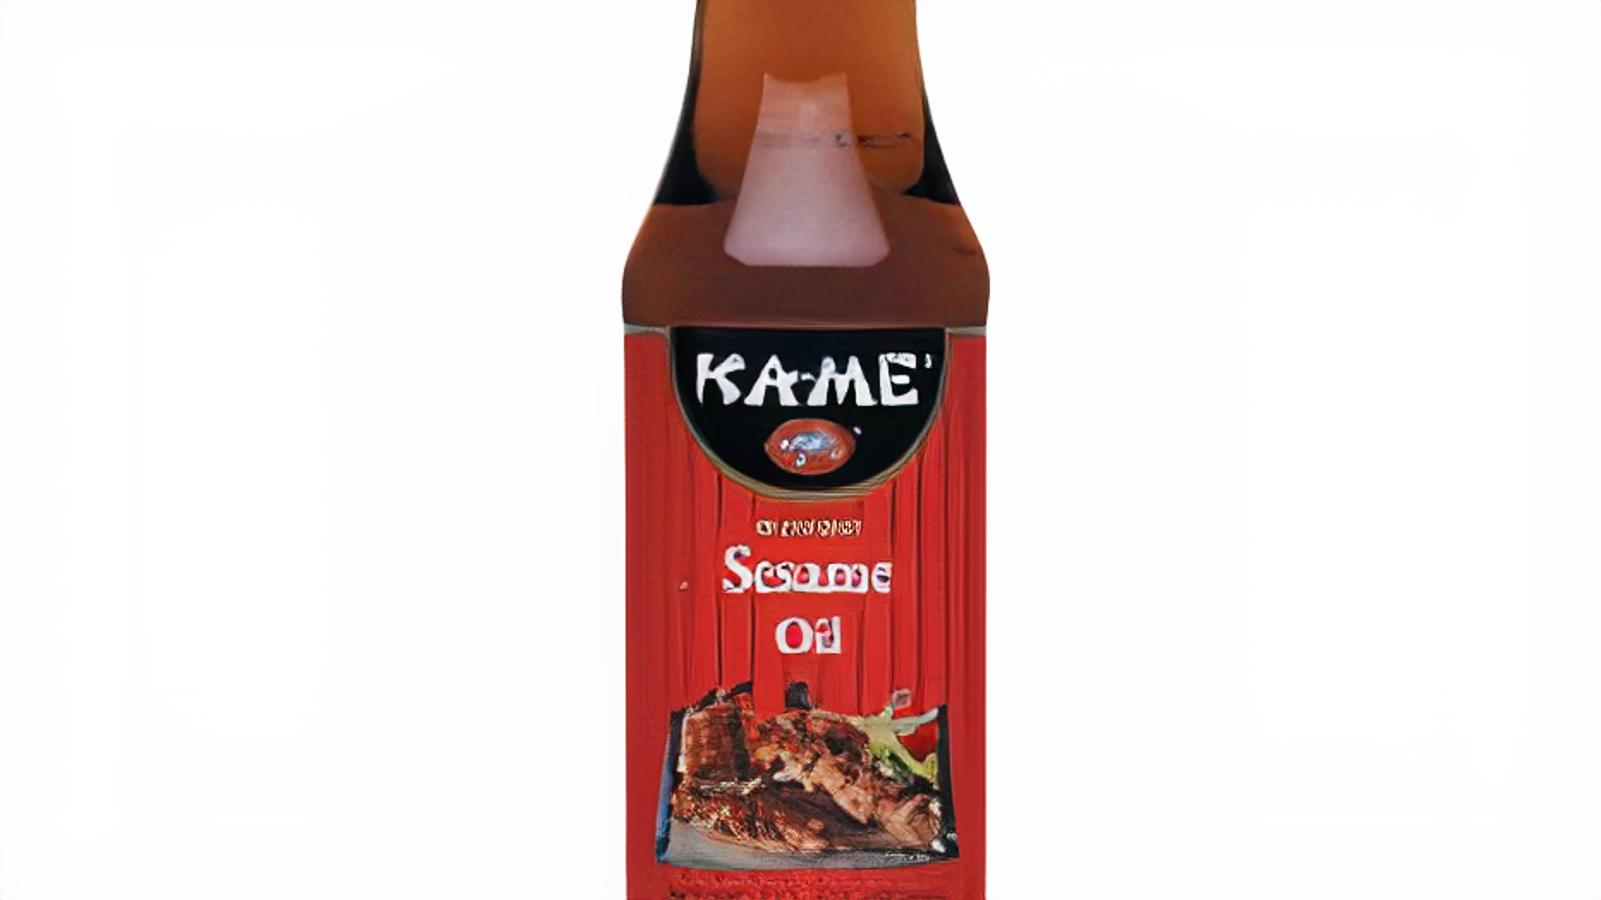 Kame Sesame Oil (7 oz.)